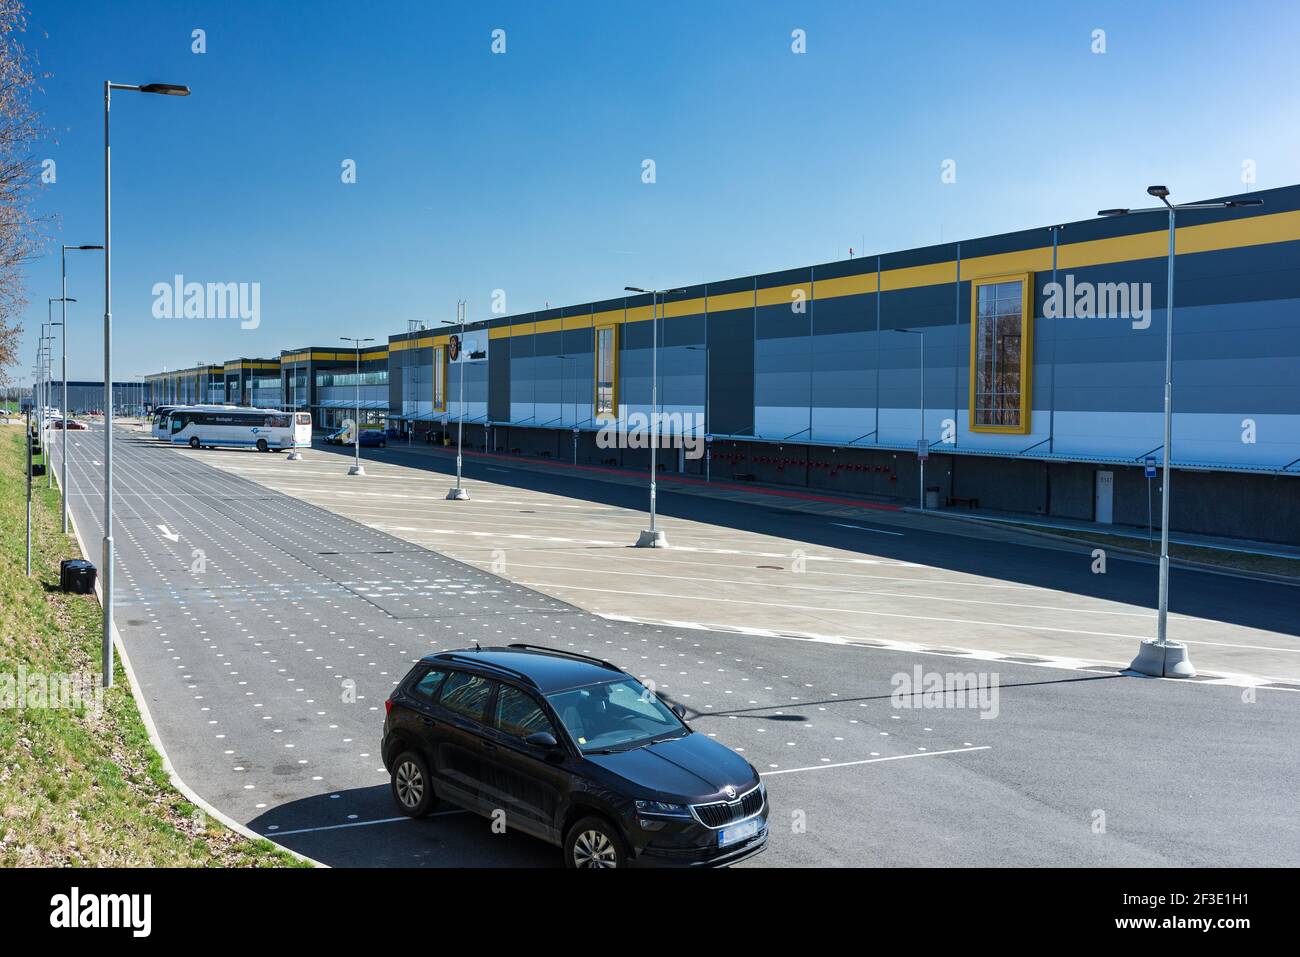 Schöne Luftansicht eines Amazon Logistik-/Distributionslagers oder -Zentrums. Farbenfrohe und malerische Industrieansicht Stockfoto